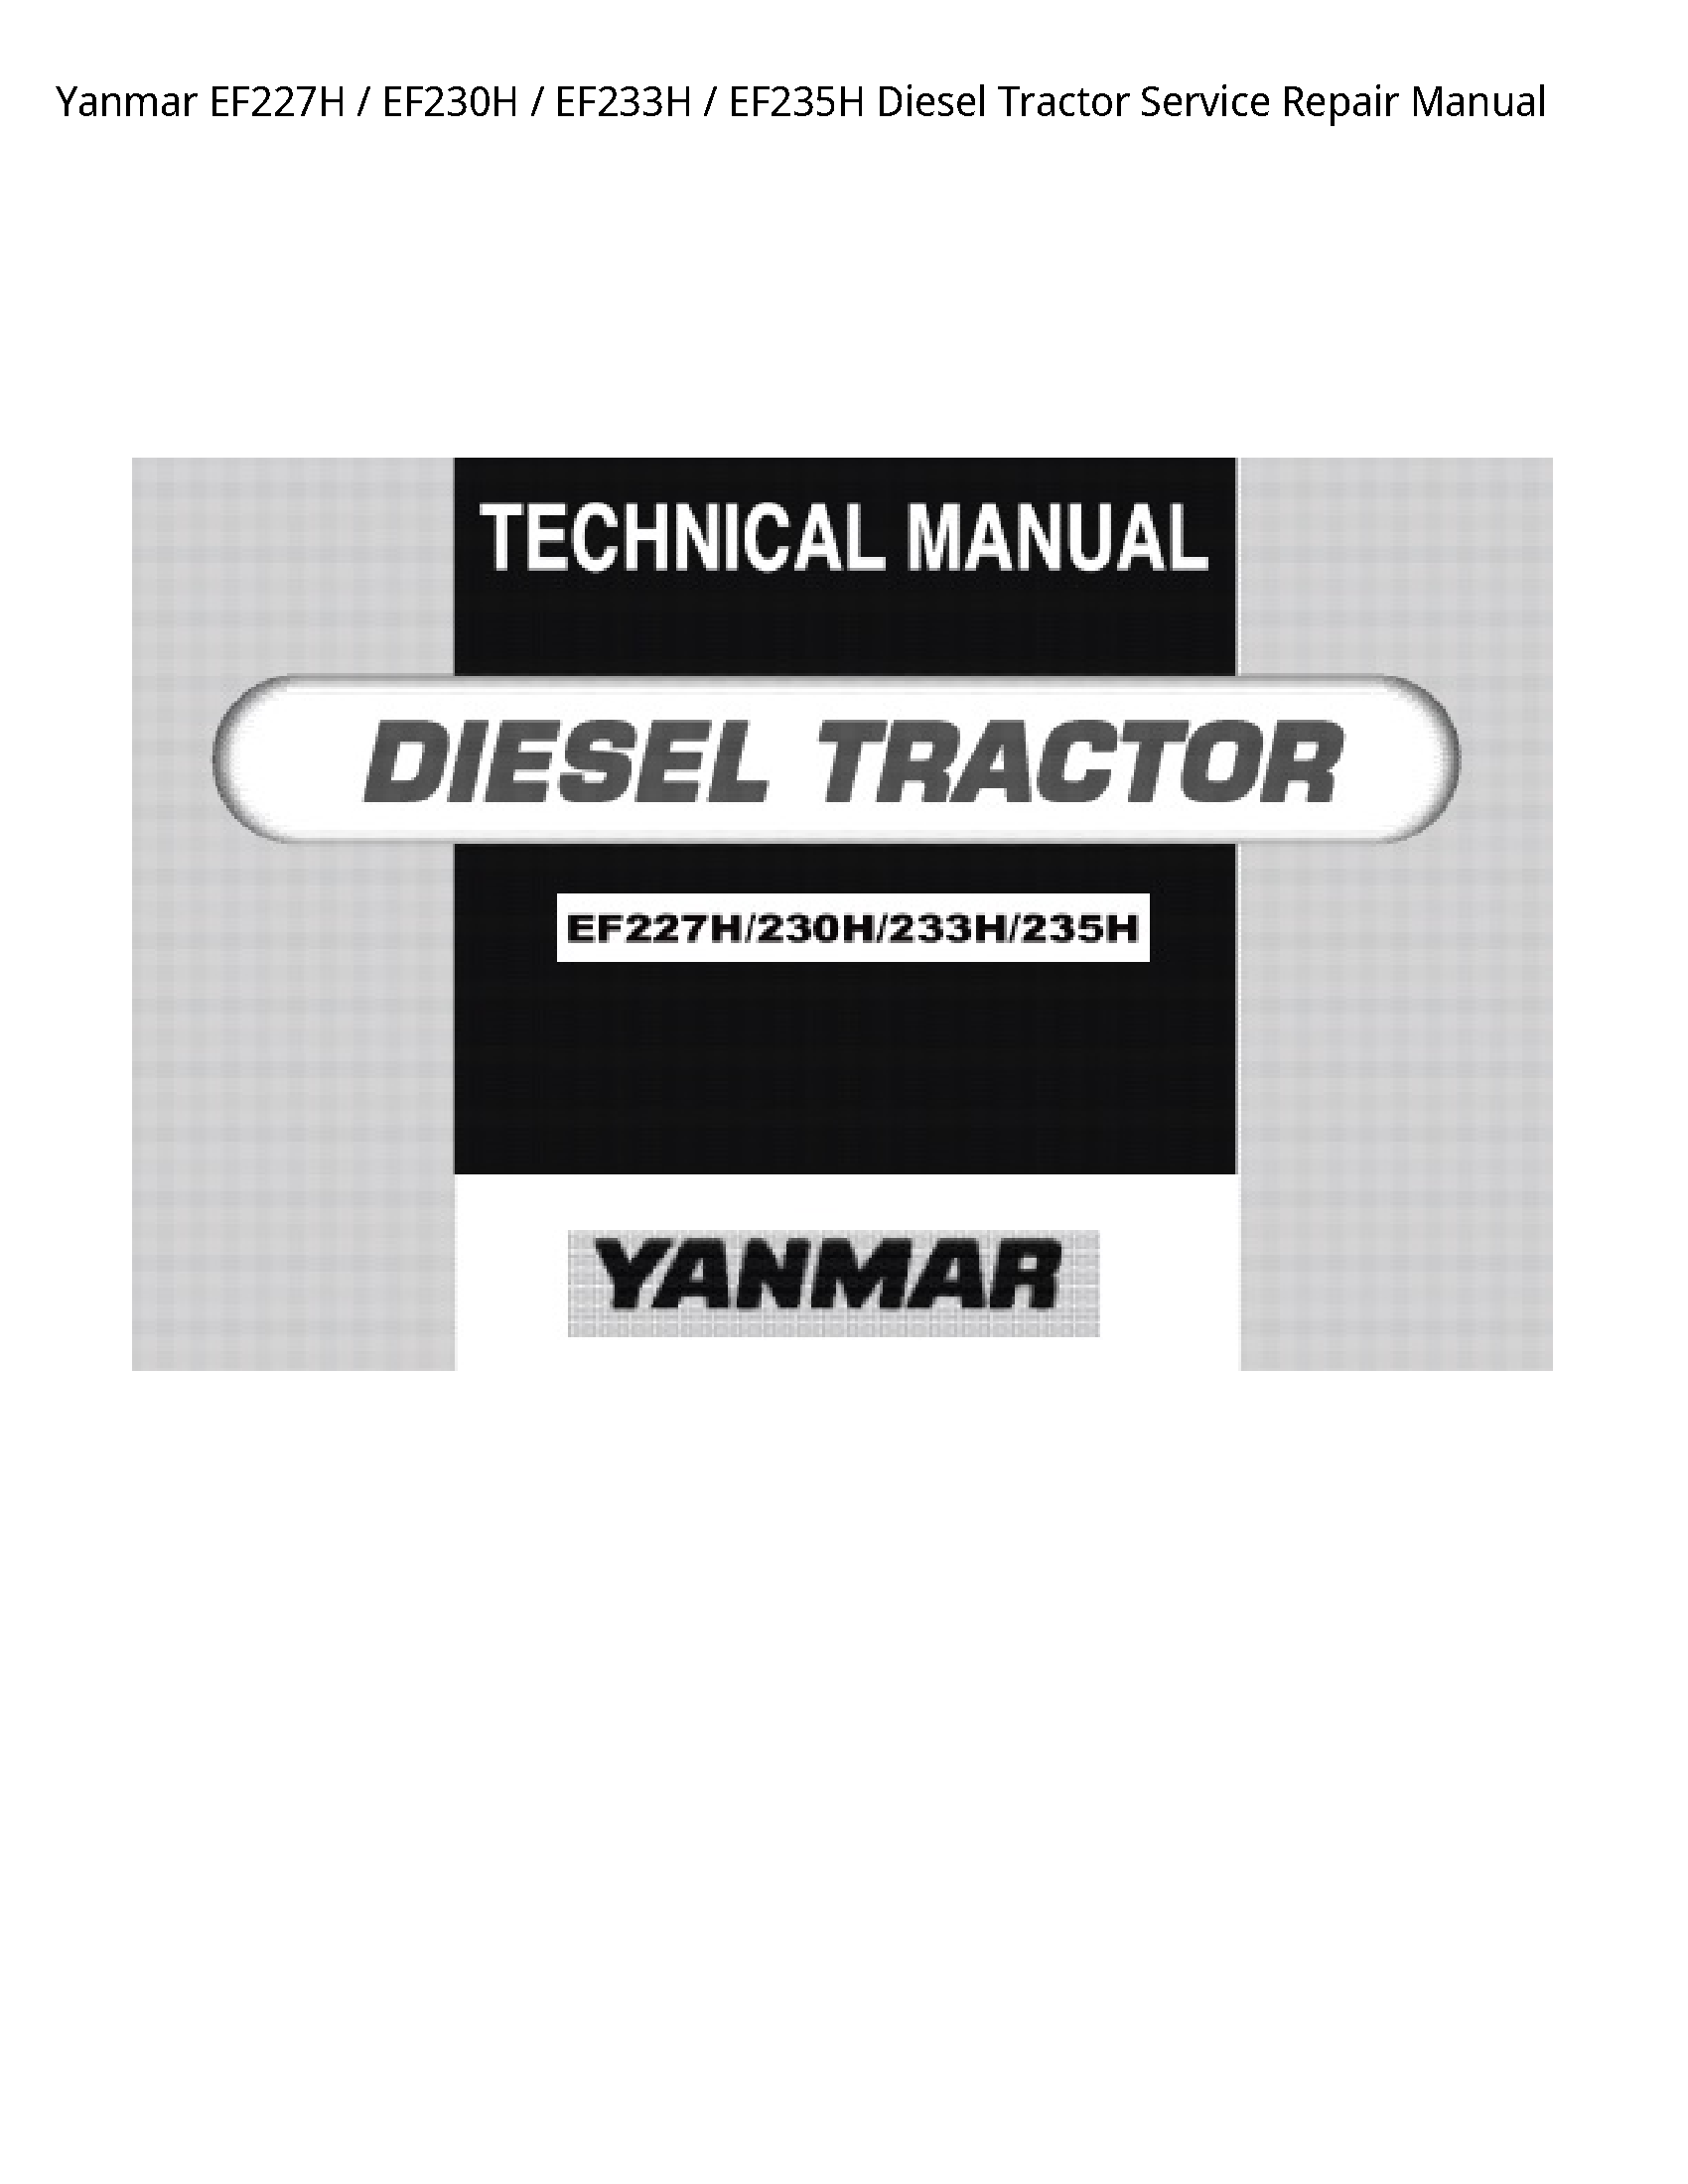 Yanmar EF227H Diesel Tractor manual